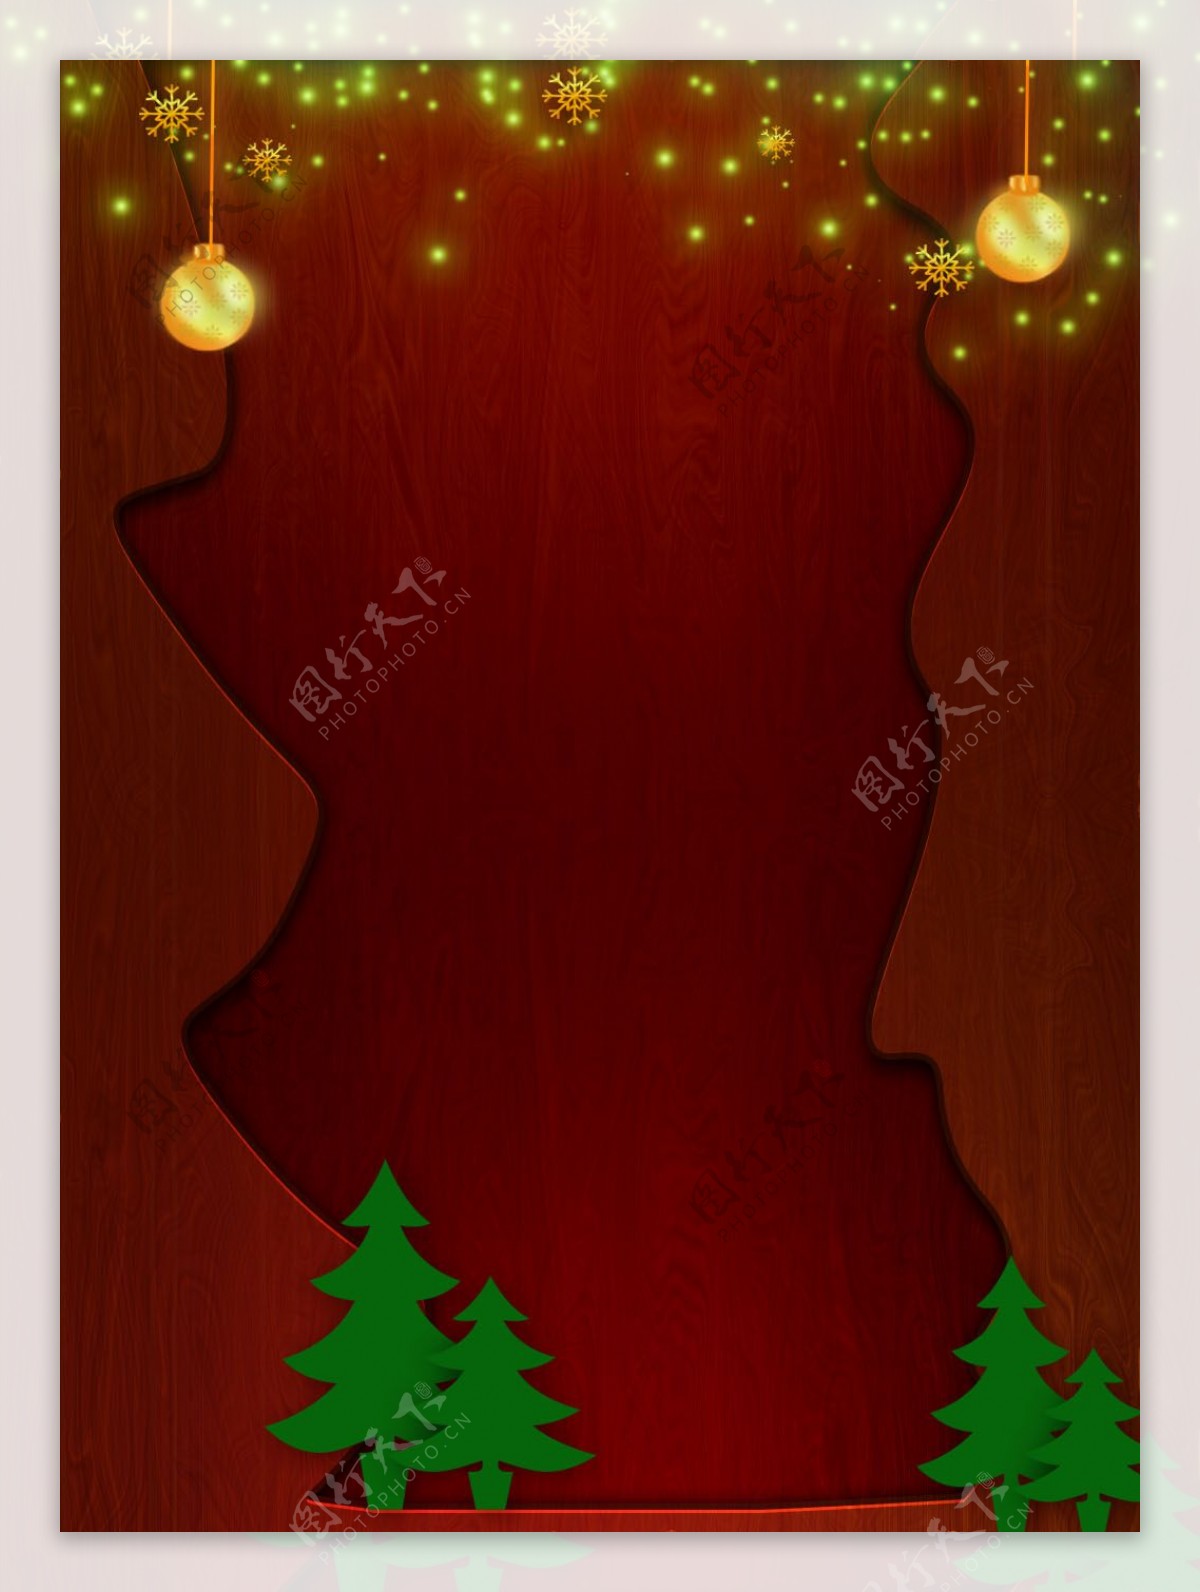 原创褐色圣诞节木纹质感纹理背景素材